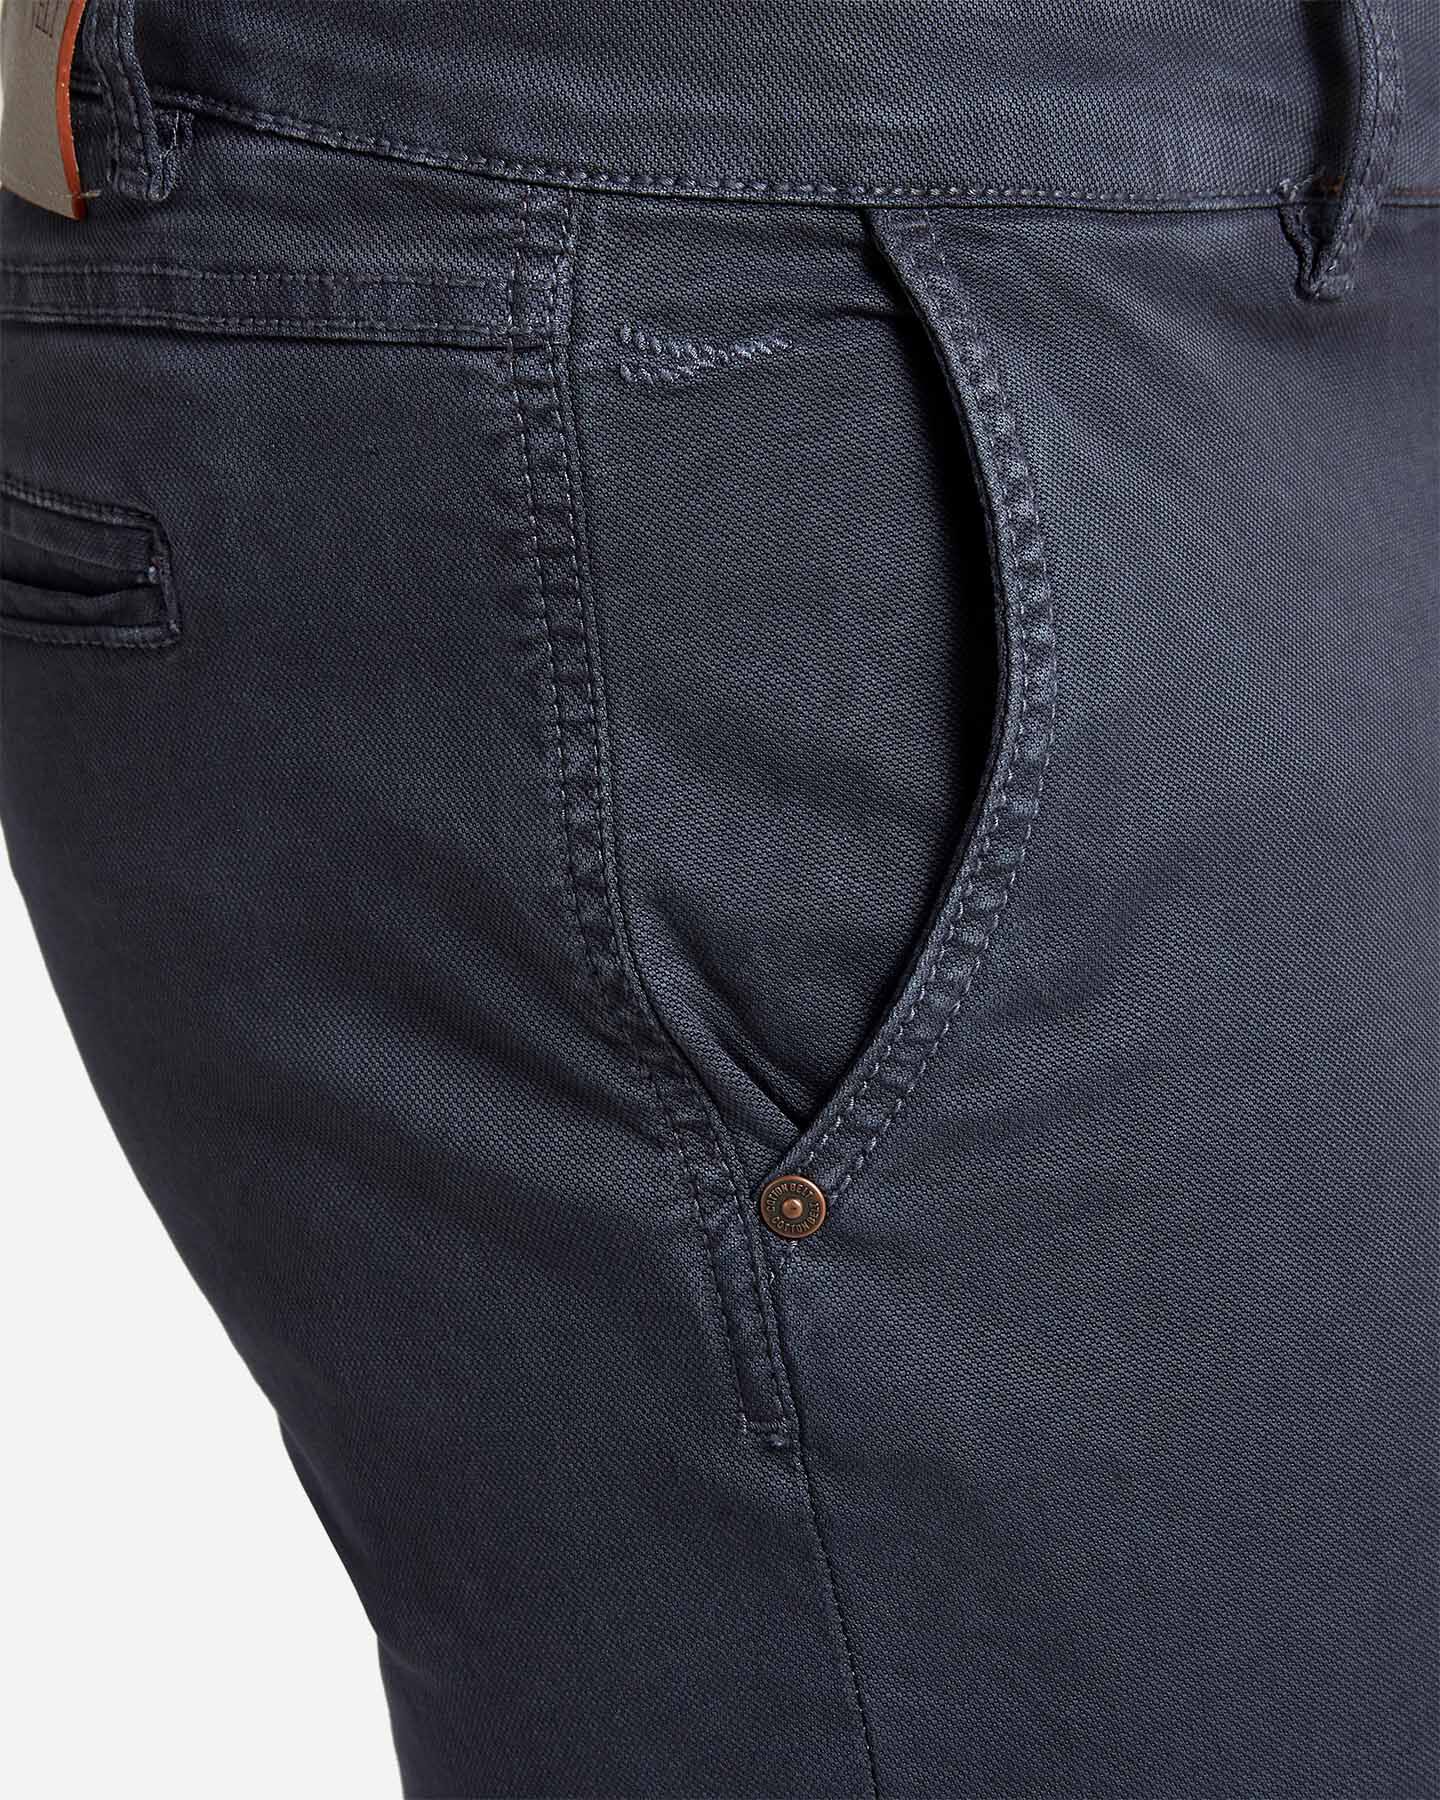  Pantalone COTTON BELT LEON SLIM M S4070908|520|32 scatto 3